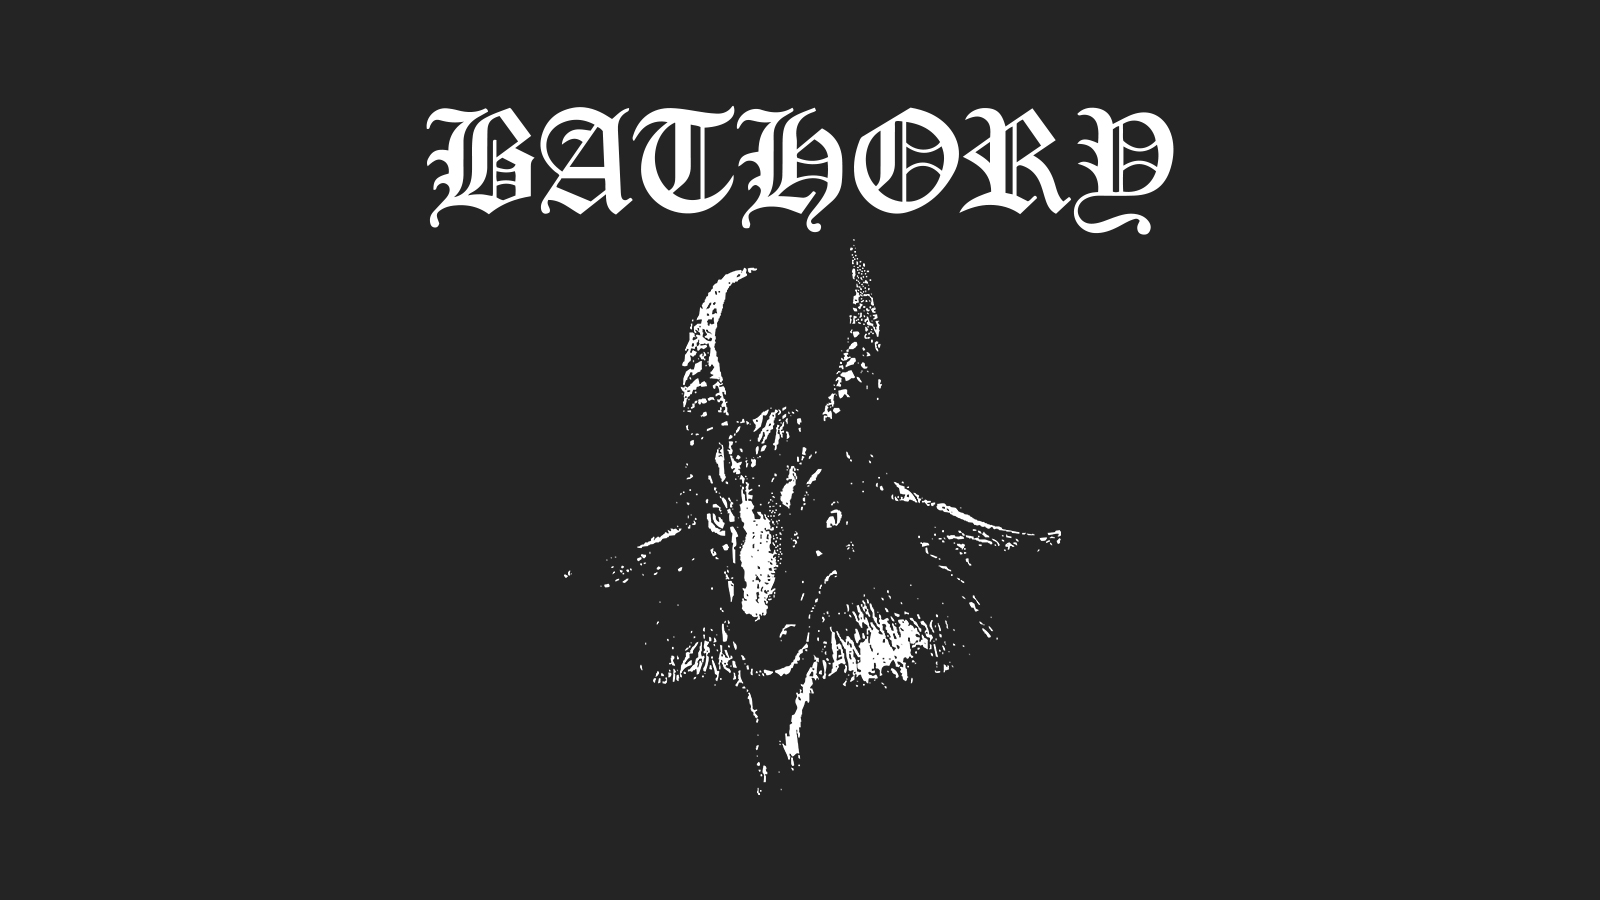 Bathory Black Metal Metal Music 1600x900